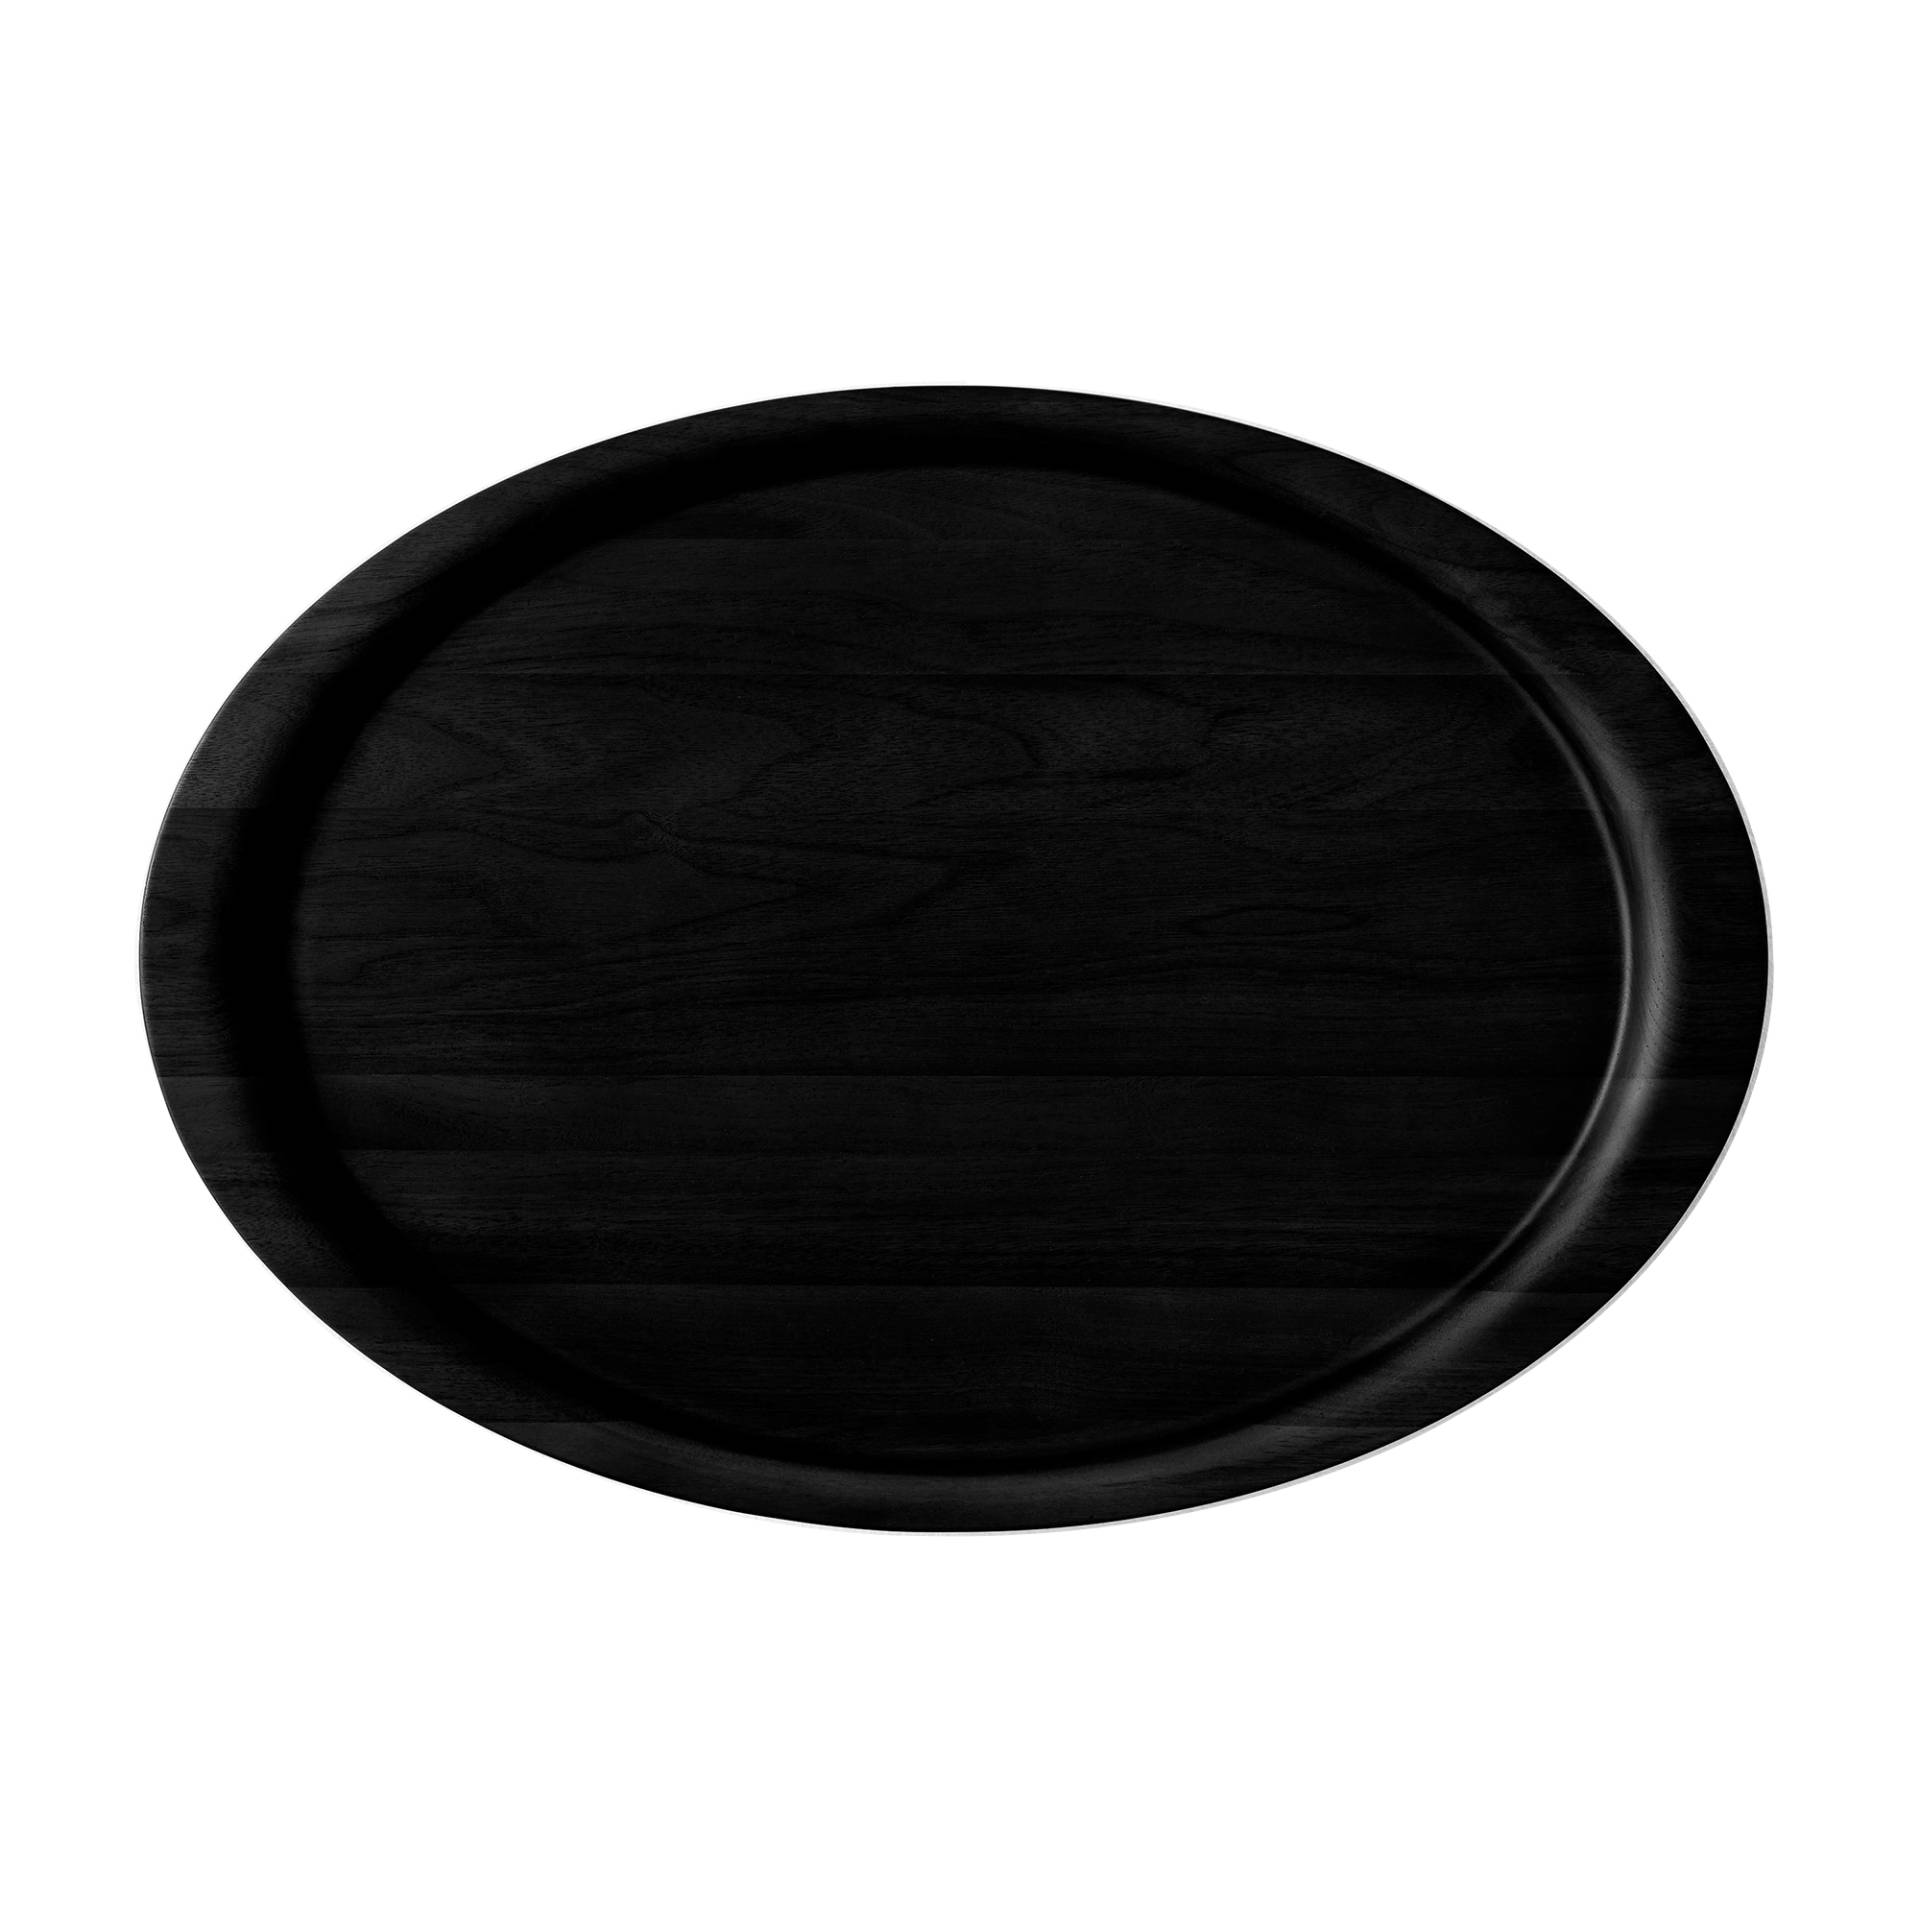 &Tradition - Collect SC65 Tablett - Eiche massiv schwarz/handpoliert/lackiert/LxBxH 54x38x2,3cm von &Tradition